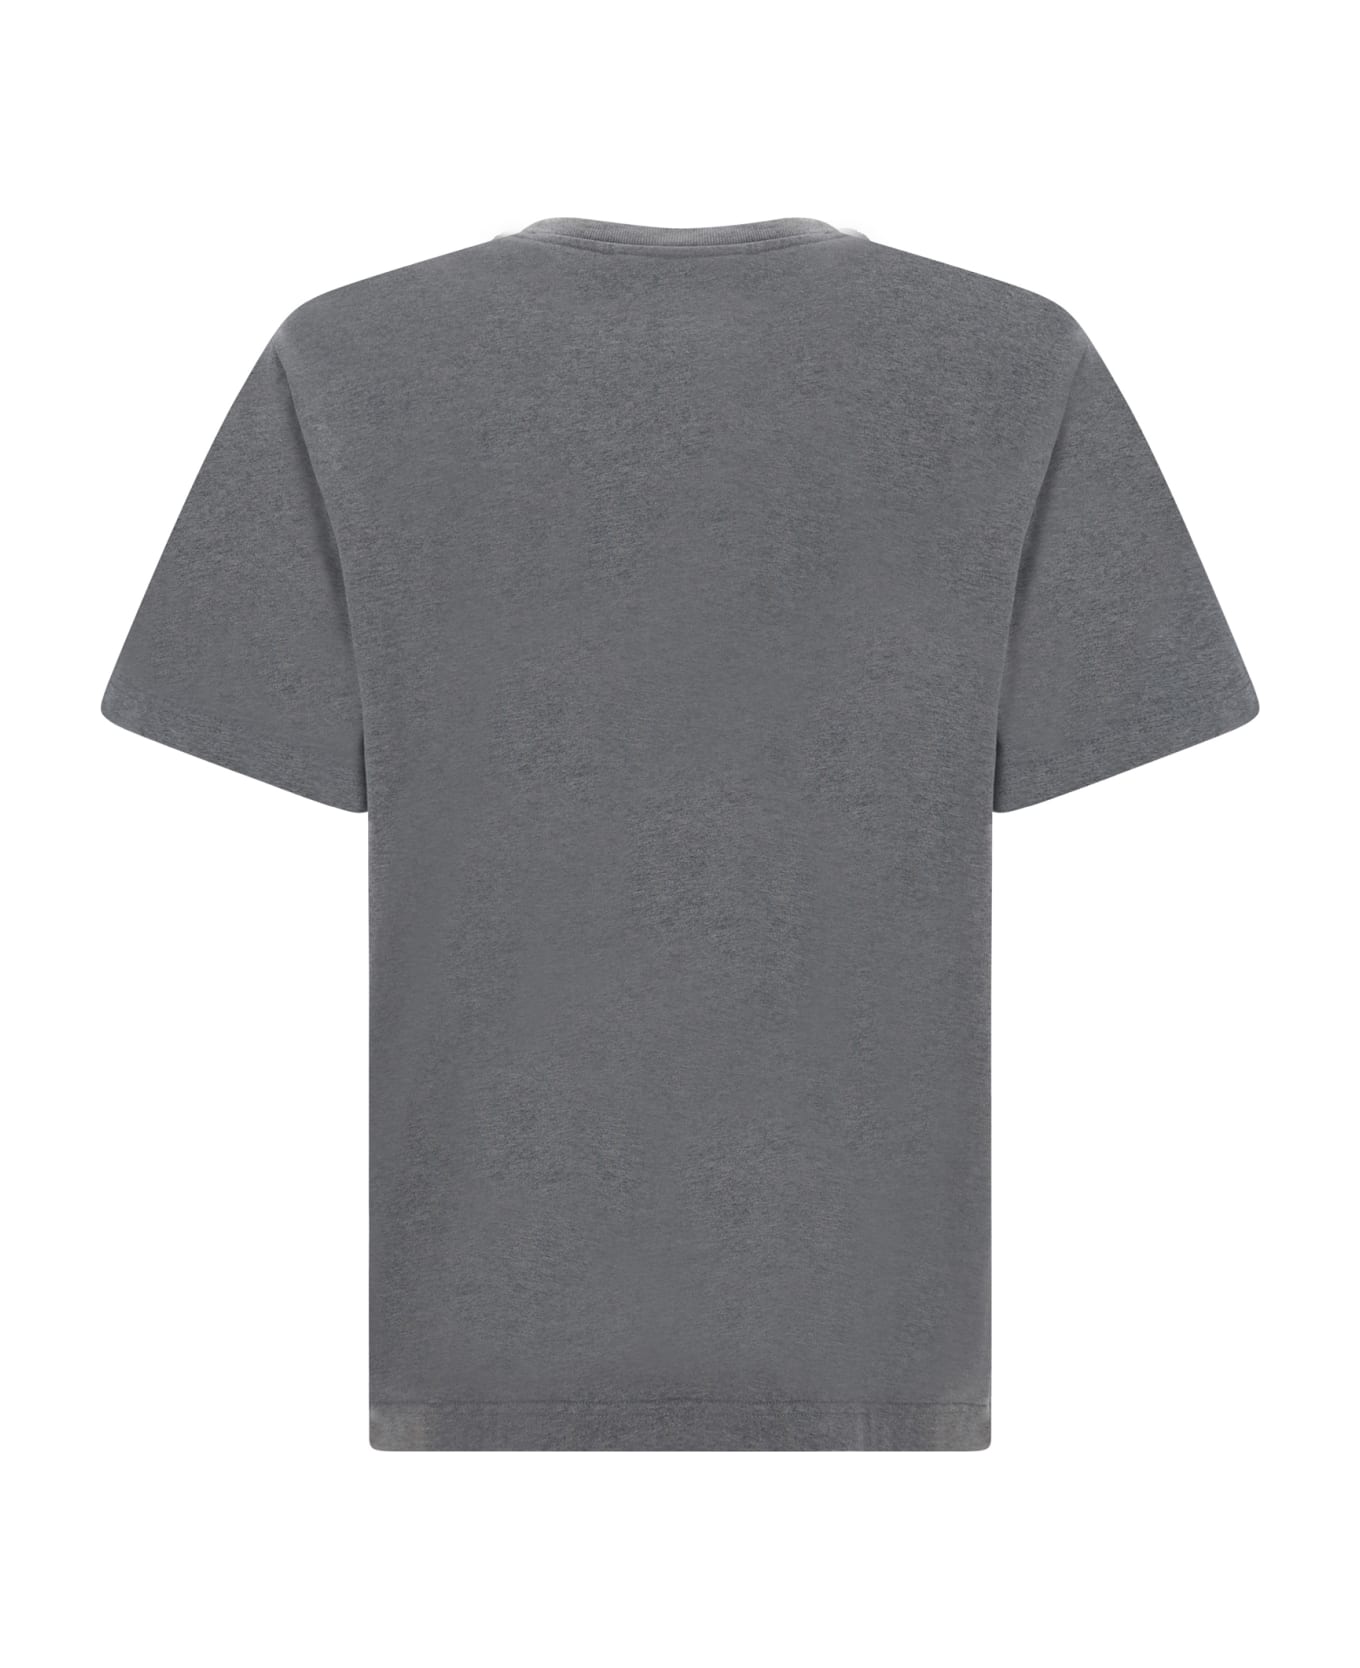 Maison Kitsuné T-shirt - Medium Grey Melange シャツ